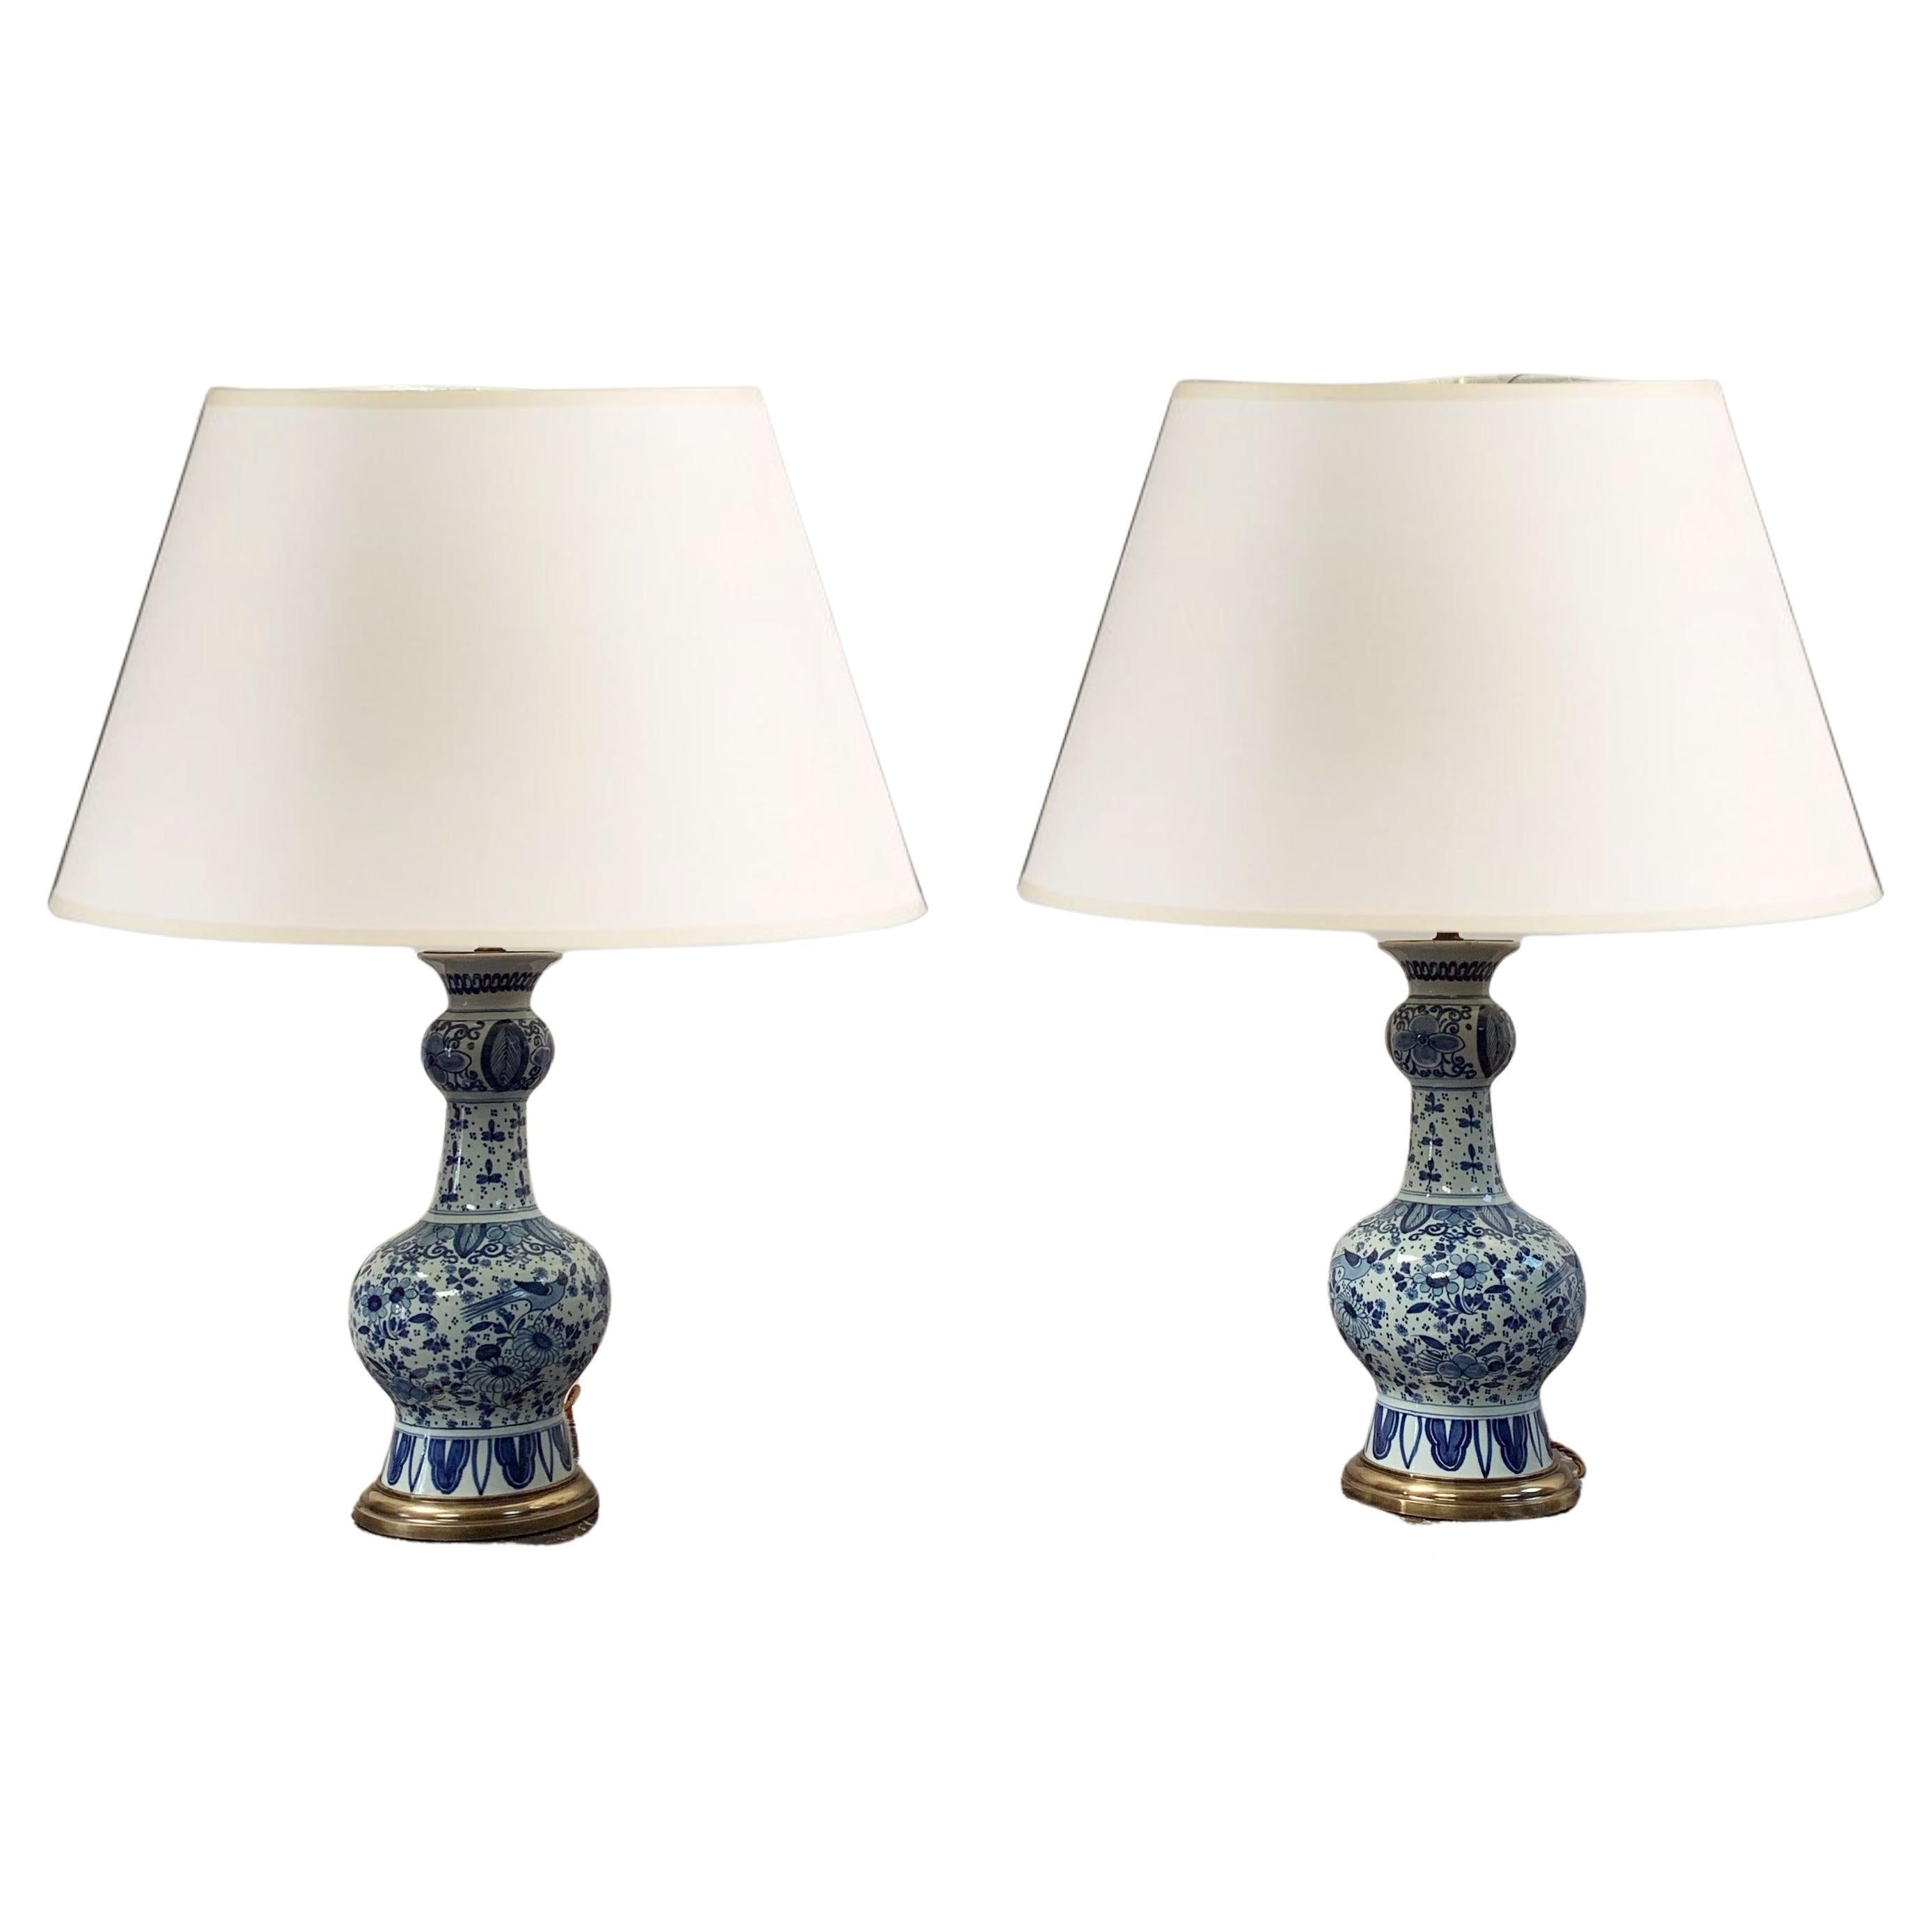 Paar blaue und weiße Delft-Lampen